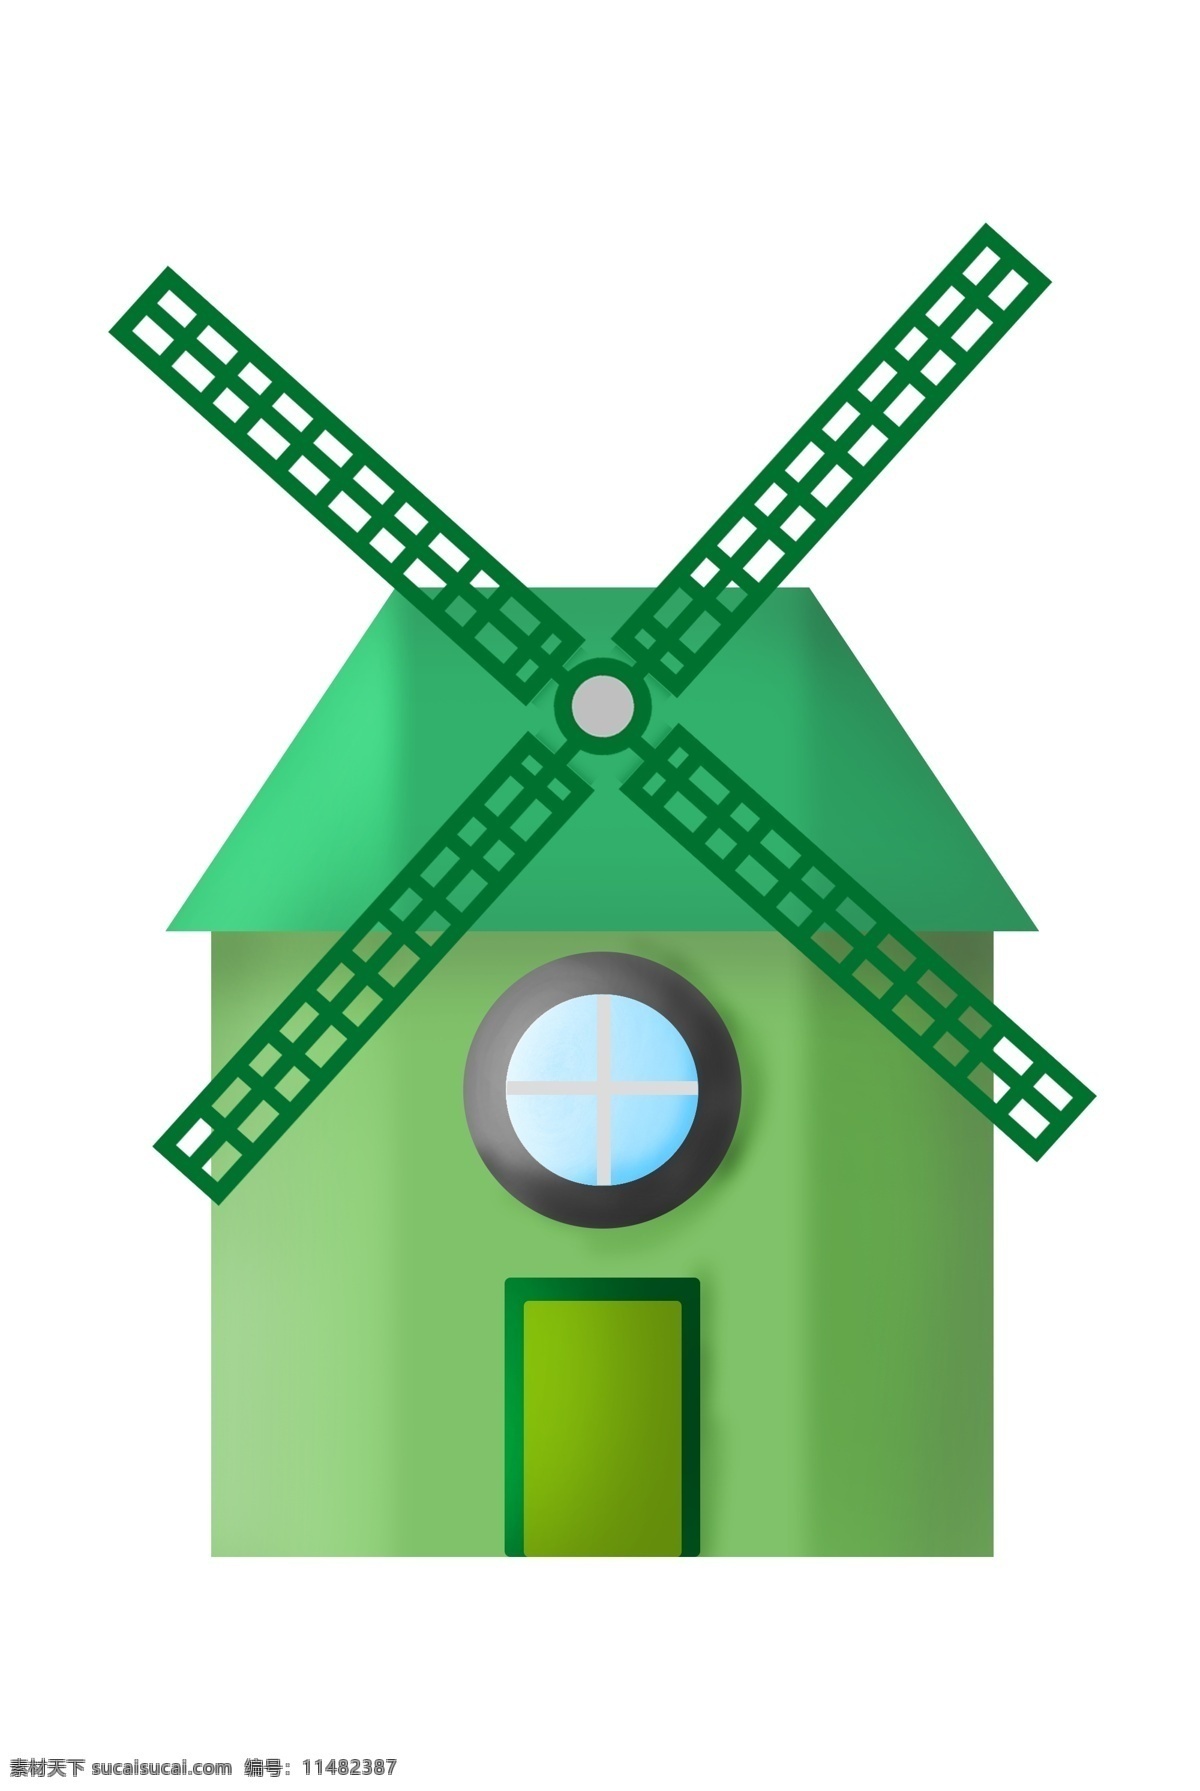 立体 风车 装饰 插画 立体风车 绿色的风车 漂亮的风车 创意风车 精美风车 卡通风车 风车建筑